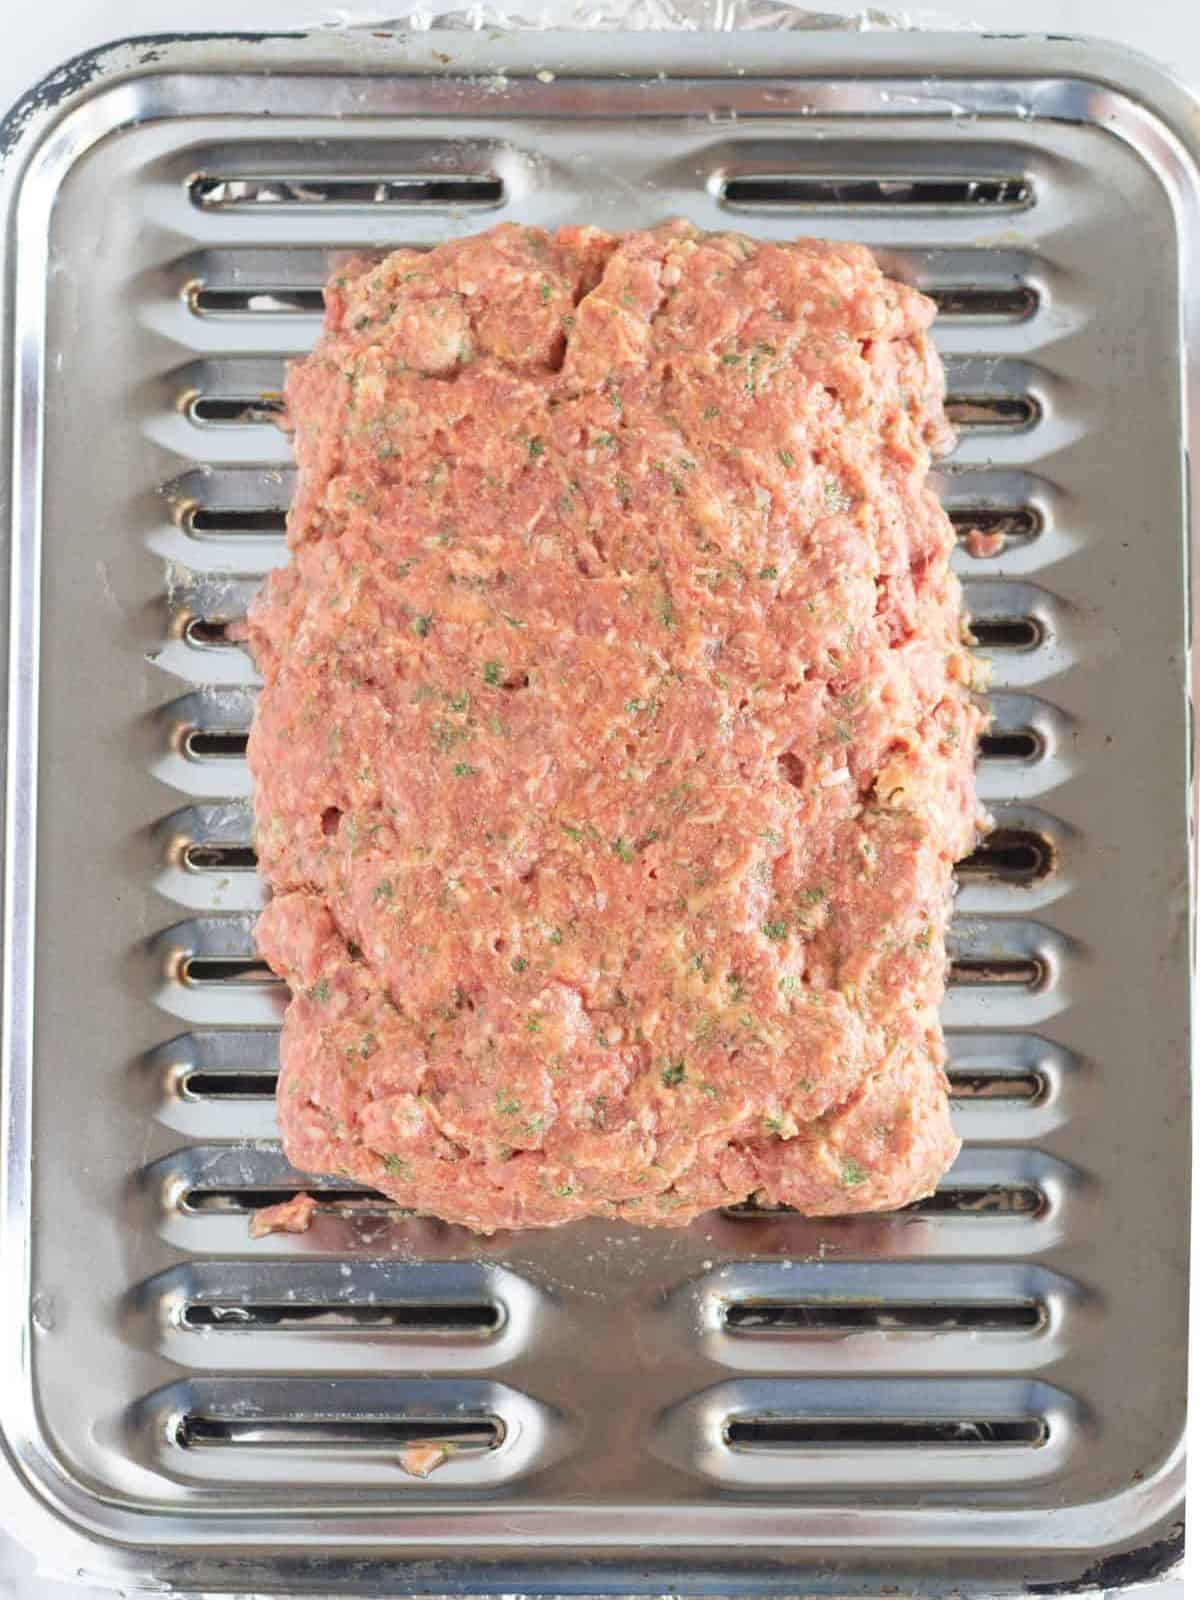 Meatloaf on a broiler pan.